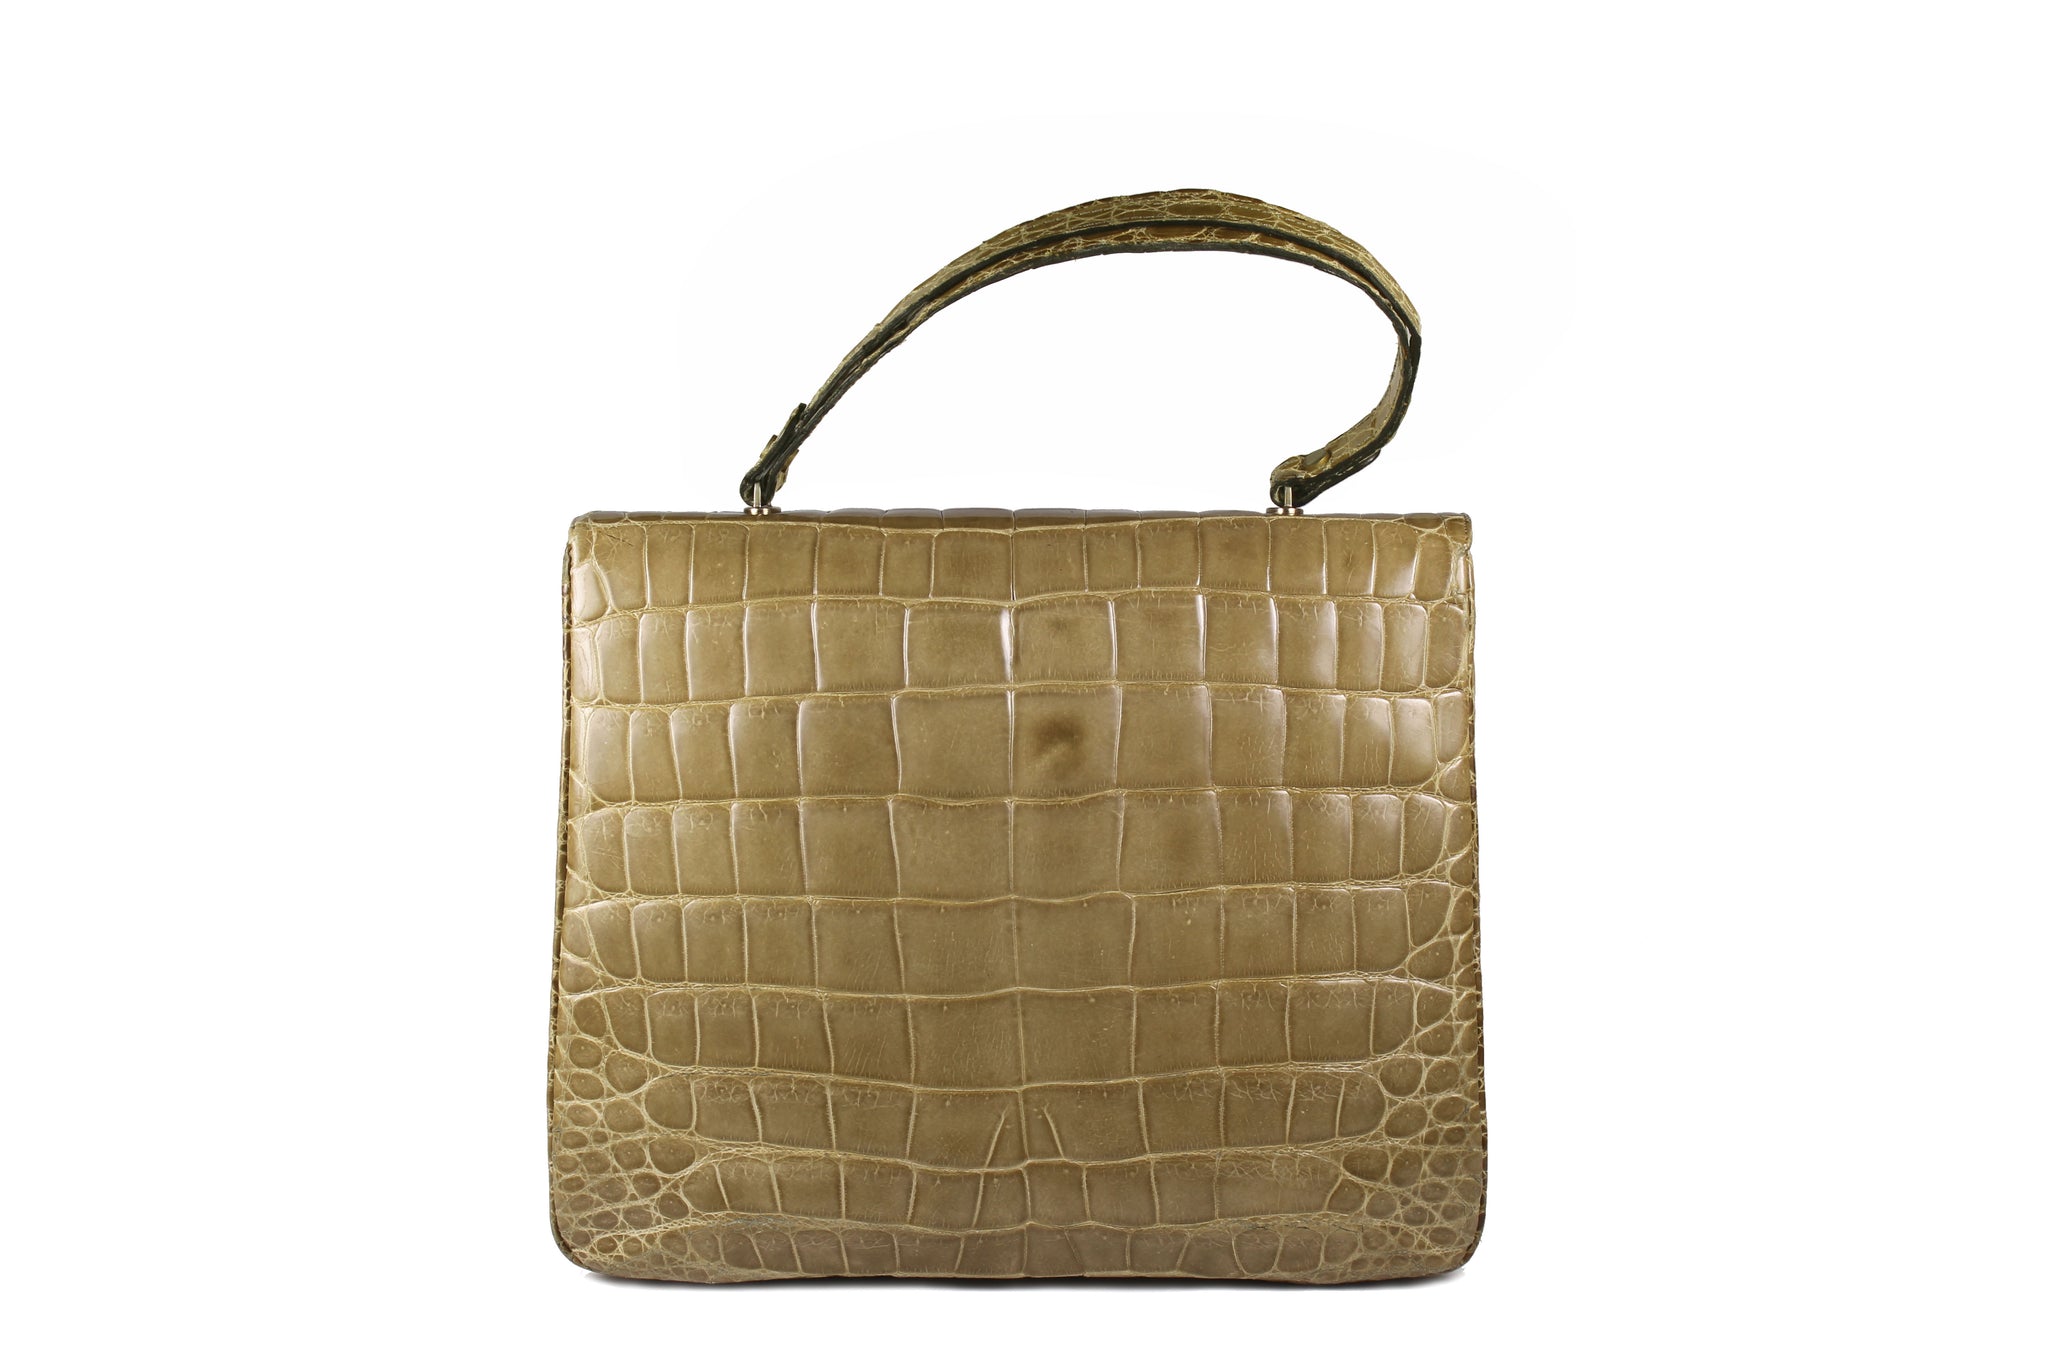 LOEWE crocodile skin handbag in light brown – Vintage Carwen